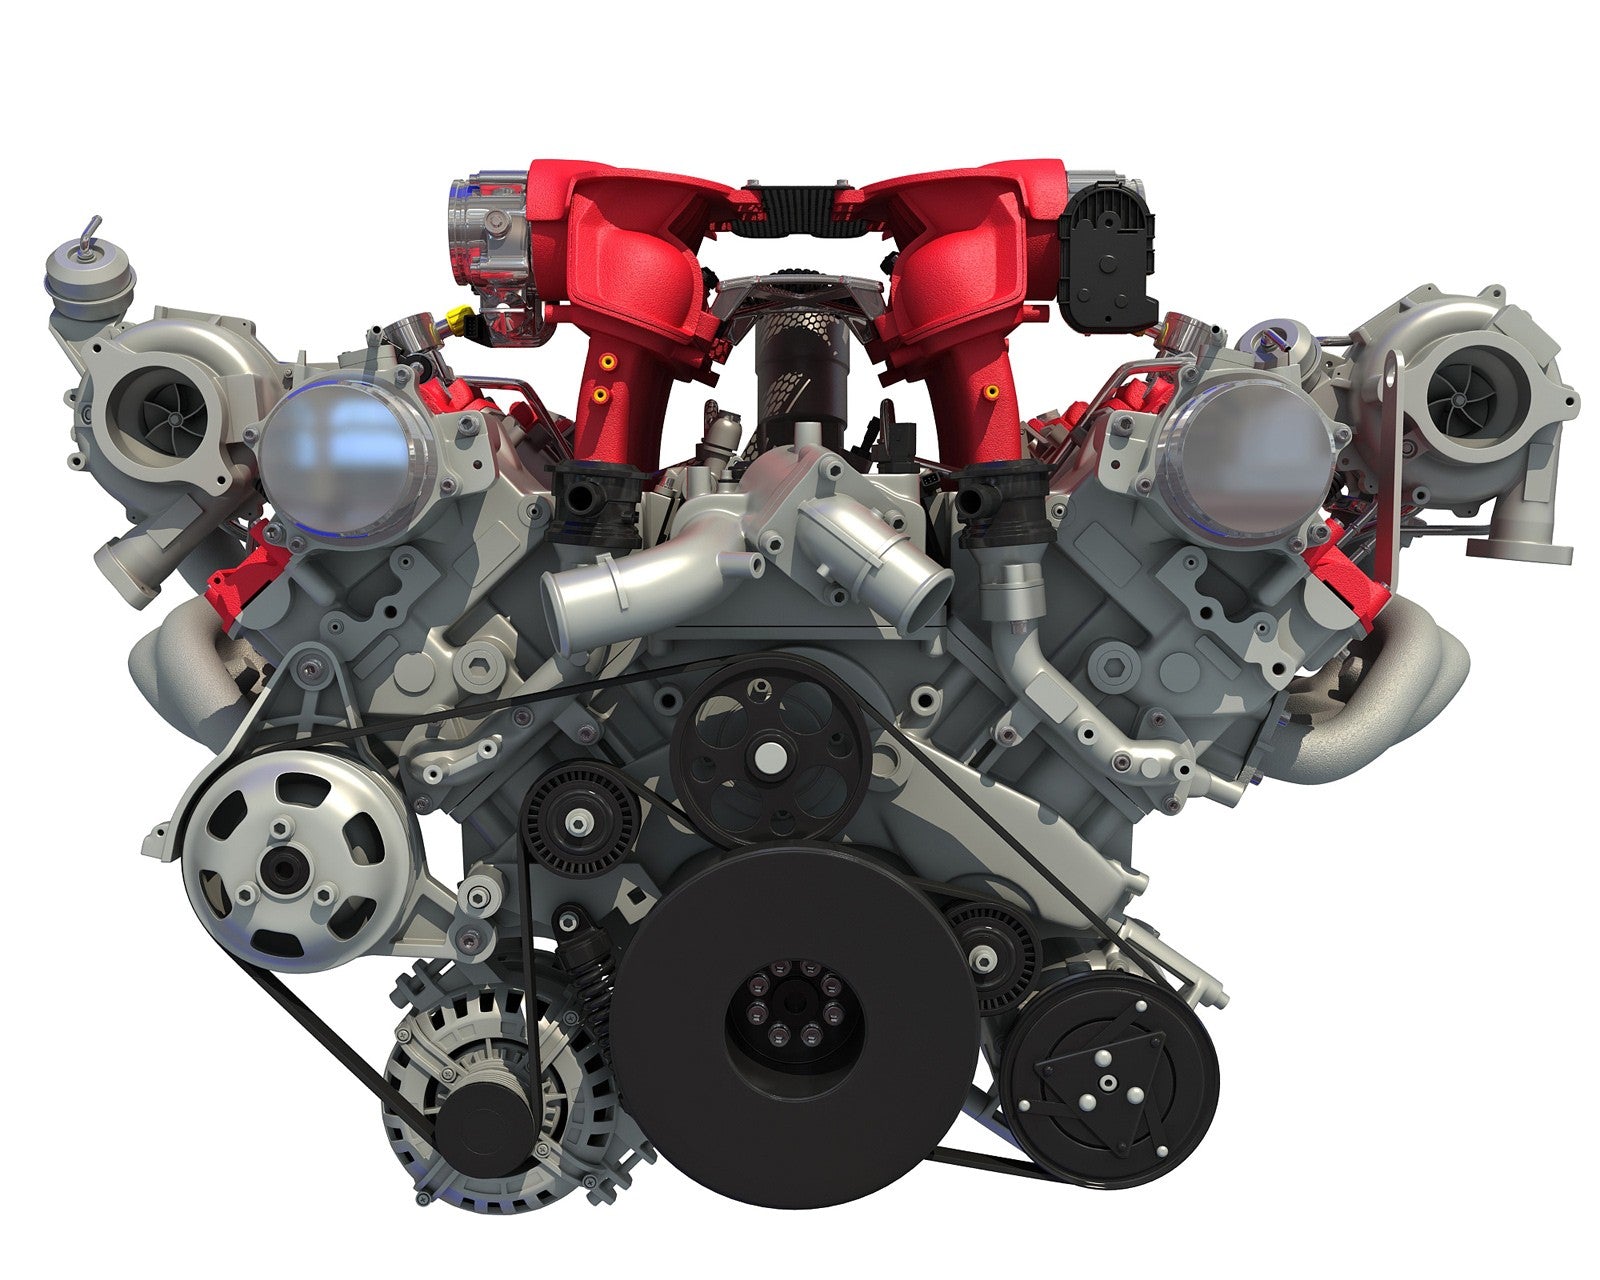 ferrari 458 v8 engine